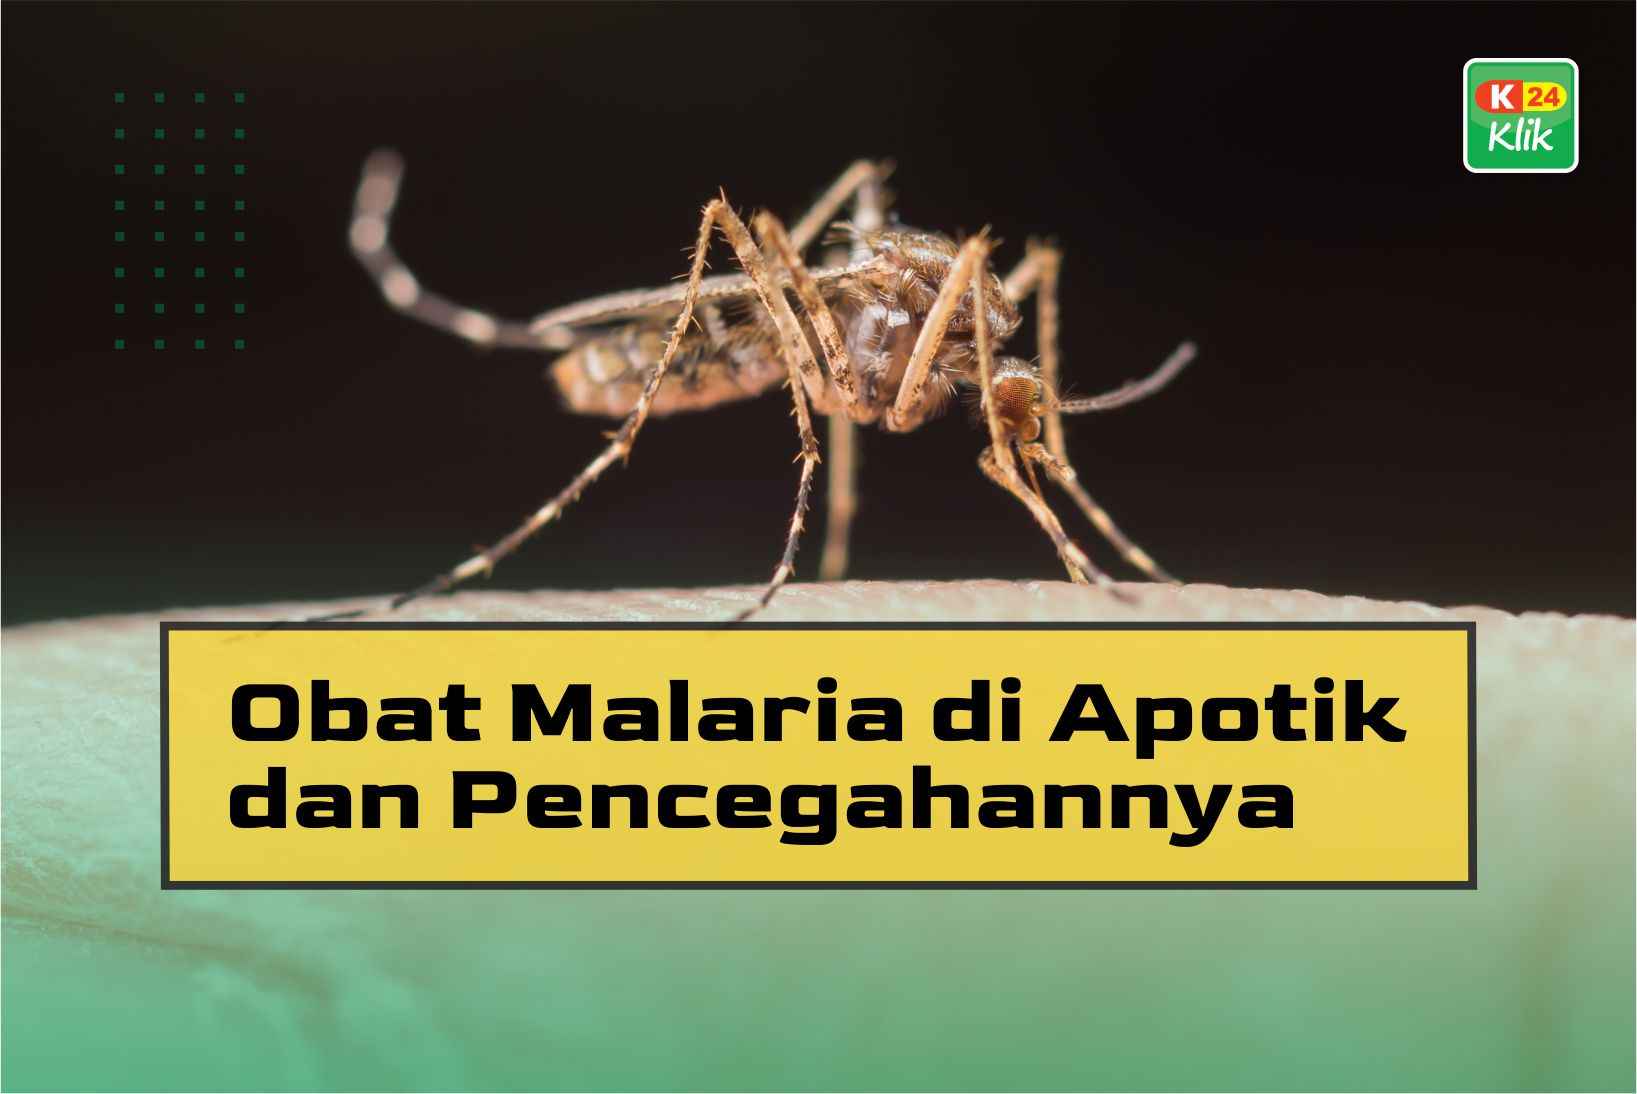 Obat Malaria di Apotik dan Pencegahannya